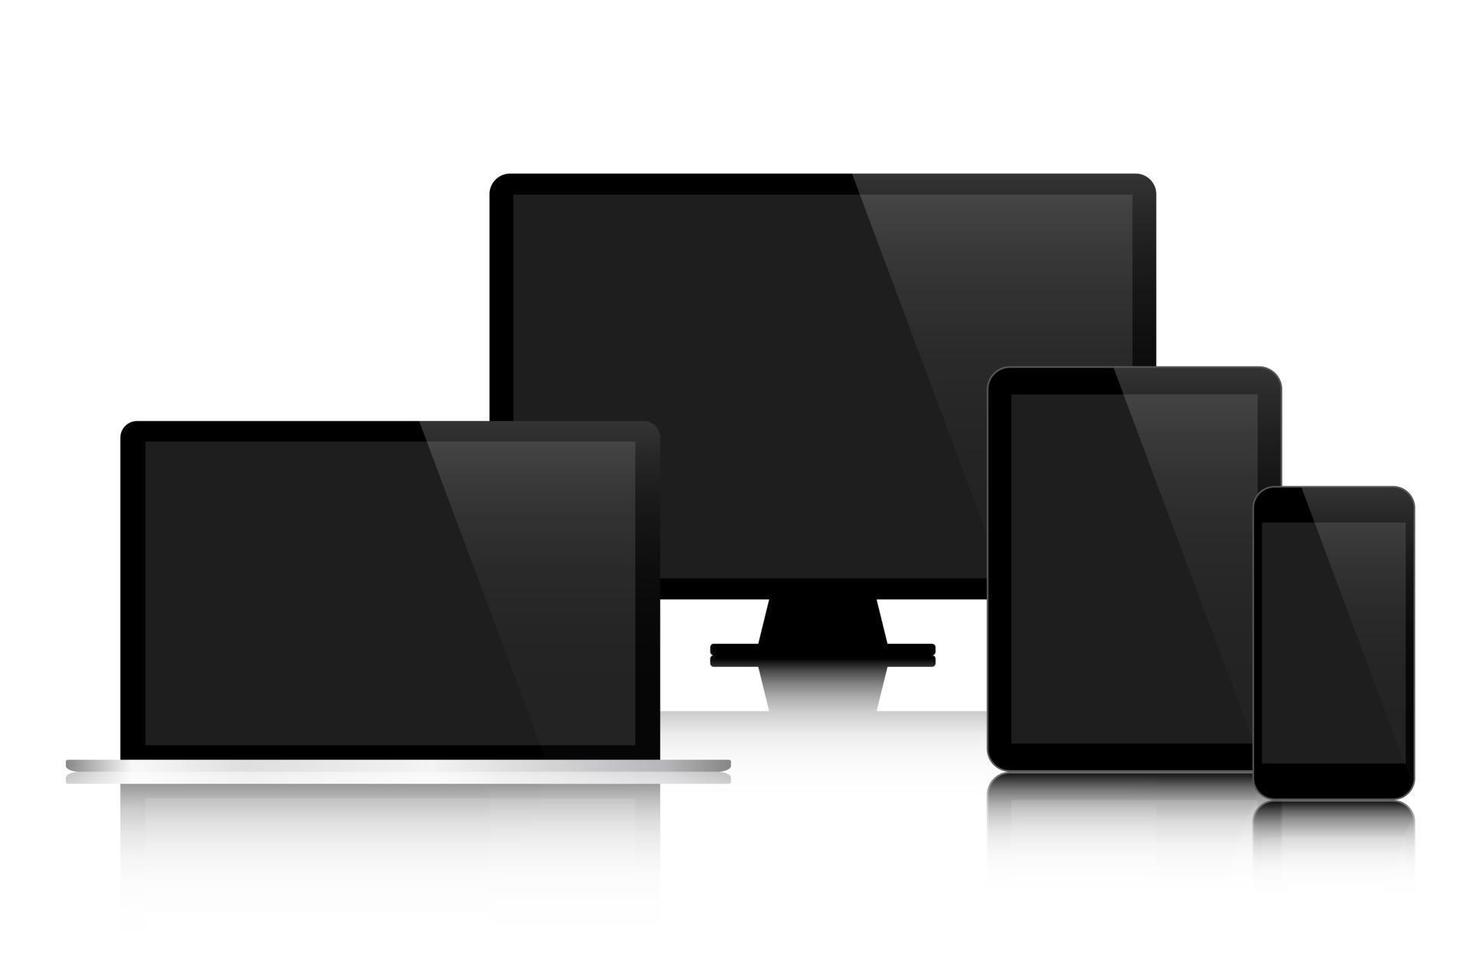 set van moderne digitale tech-apparaten met zwart scherm geïsoleerd op een witte achtergrond bedrijfsconcept voor uw infographic computer smartphone tablet laptop vector